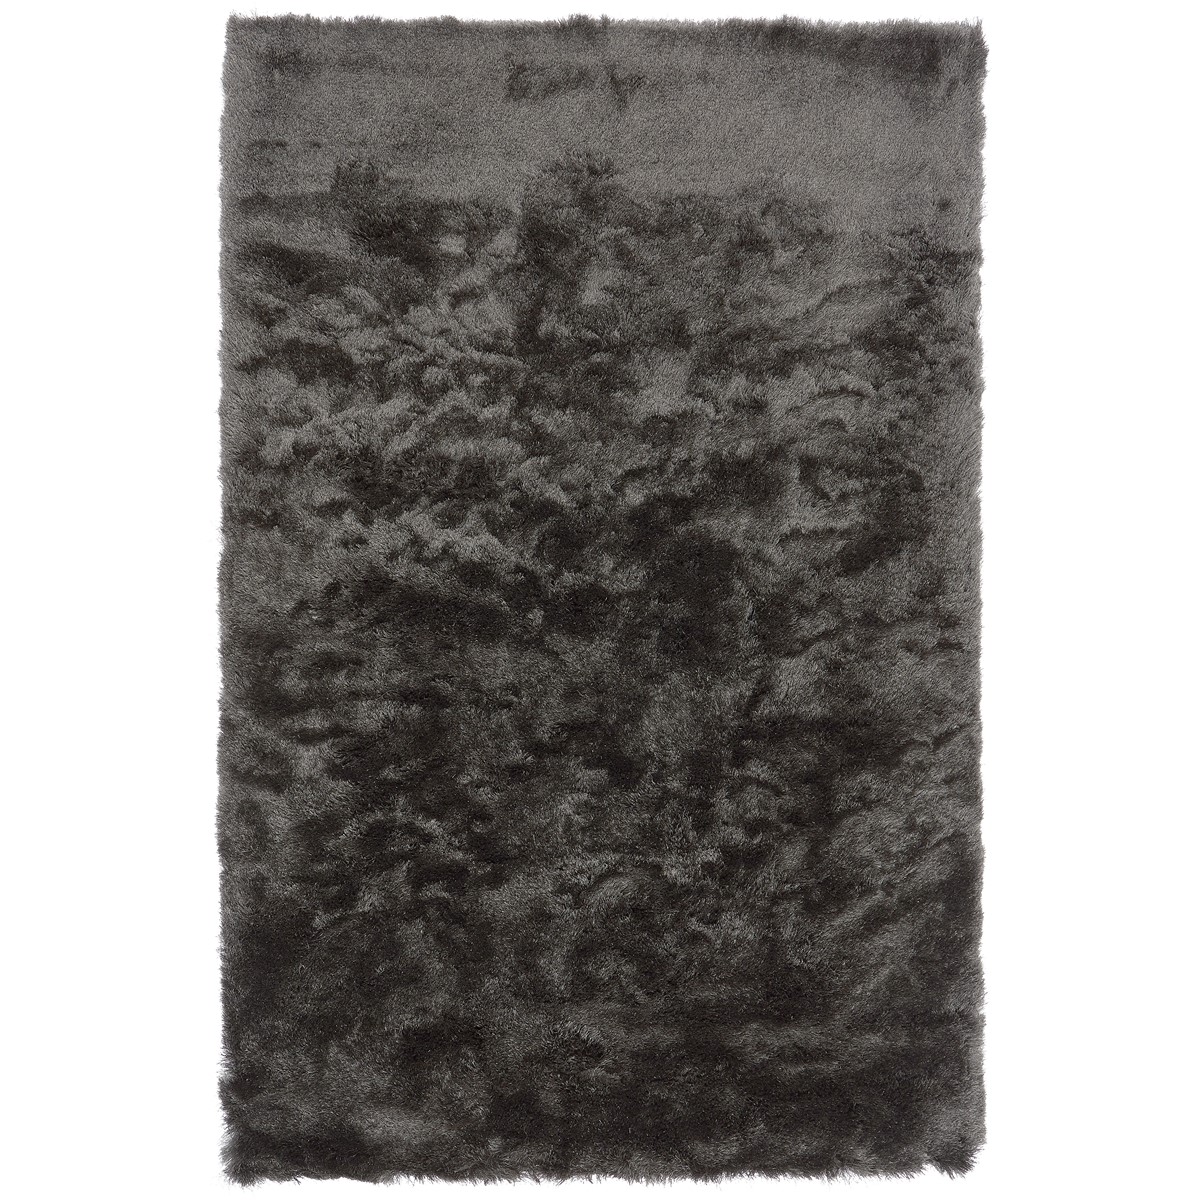 Tapis shaggy doux en Polyester Gris anthracite 120x180 cm